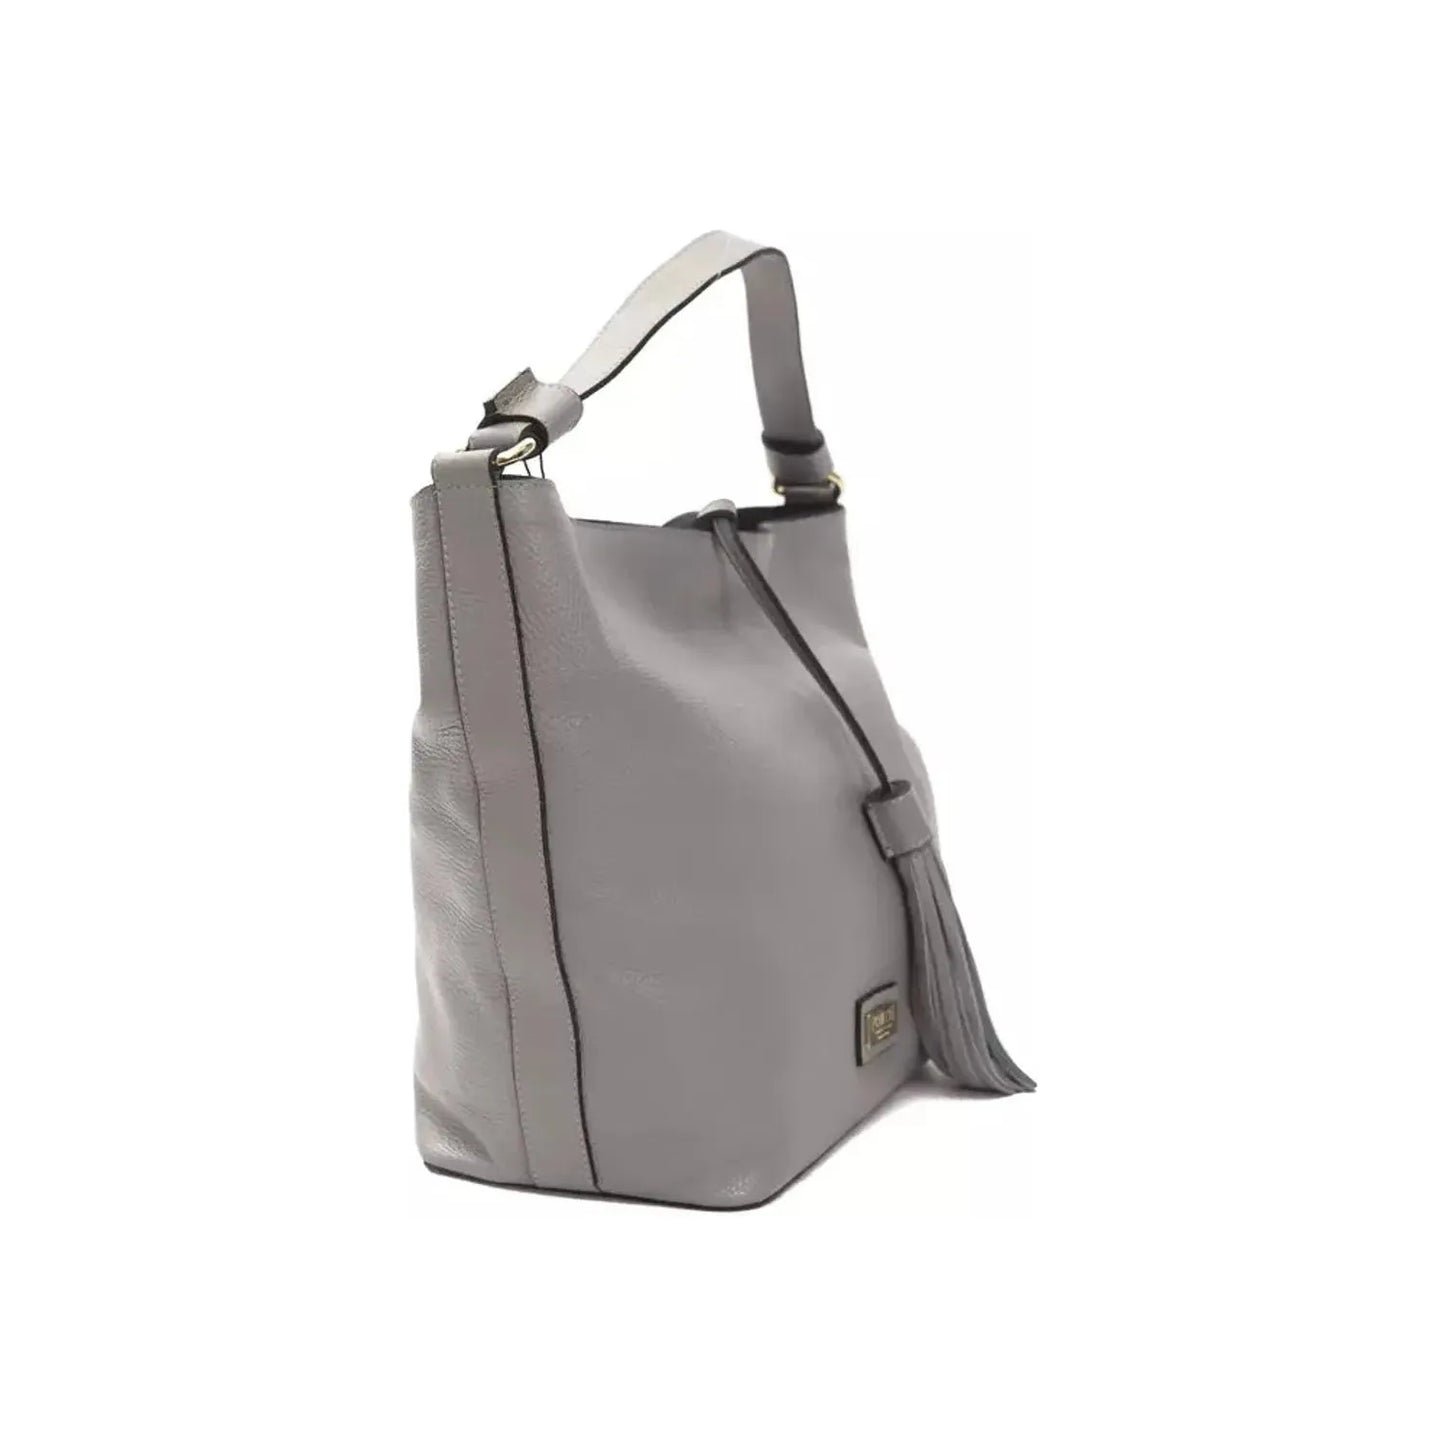 Pompei Donatella Chic Gray Leather Shoulder Bag - Adjustable Strap WOMAN SHOULDER BAGS gray-leather-shoulder-bag-1